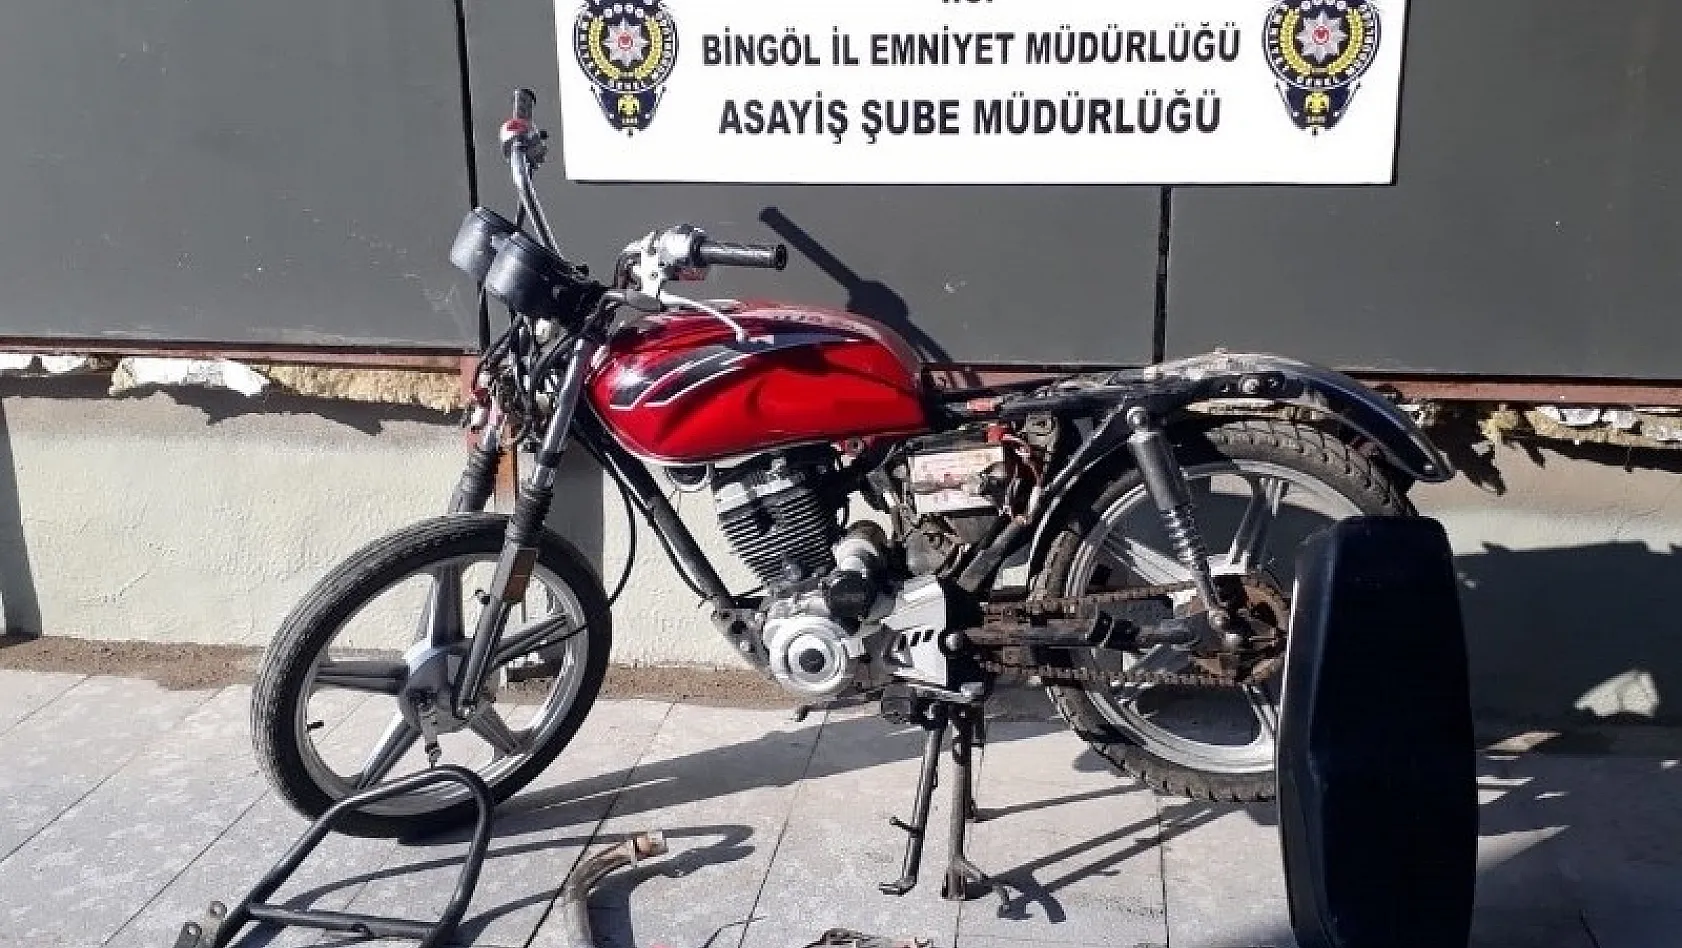 Bingöl'de gasp ve hırsızlık şüphelisi 2 şahıs tutuklandı